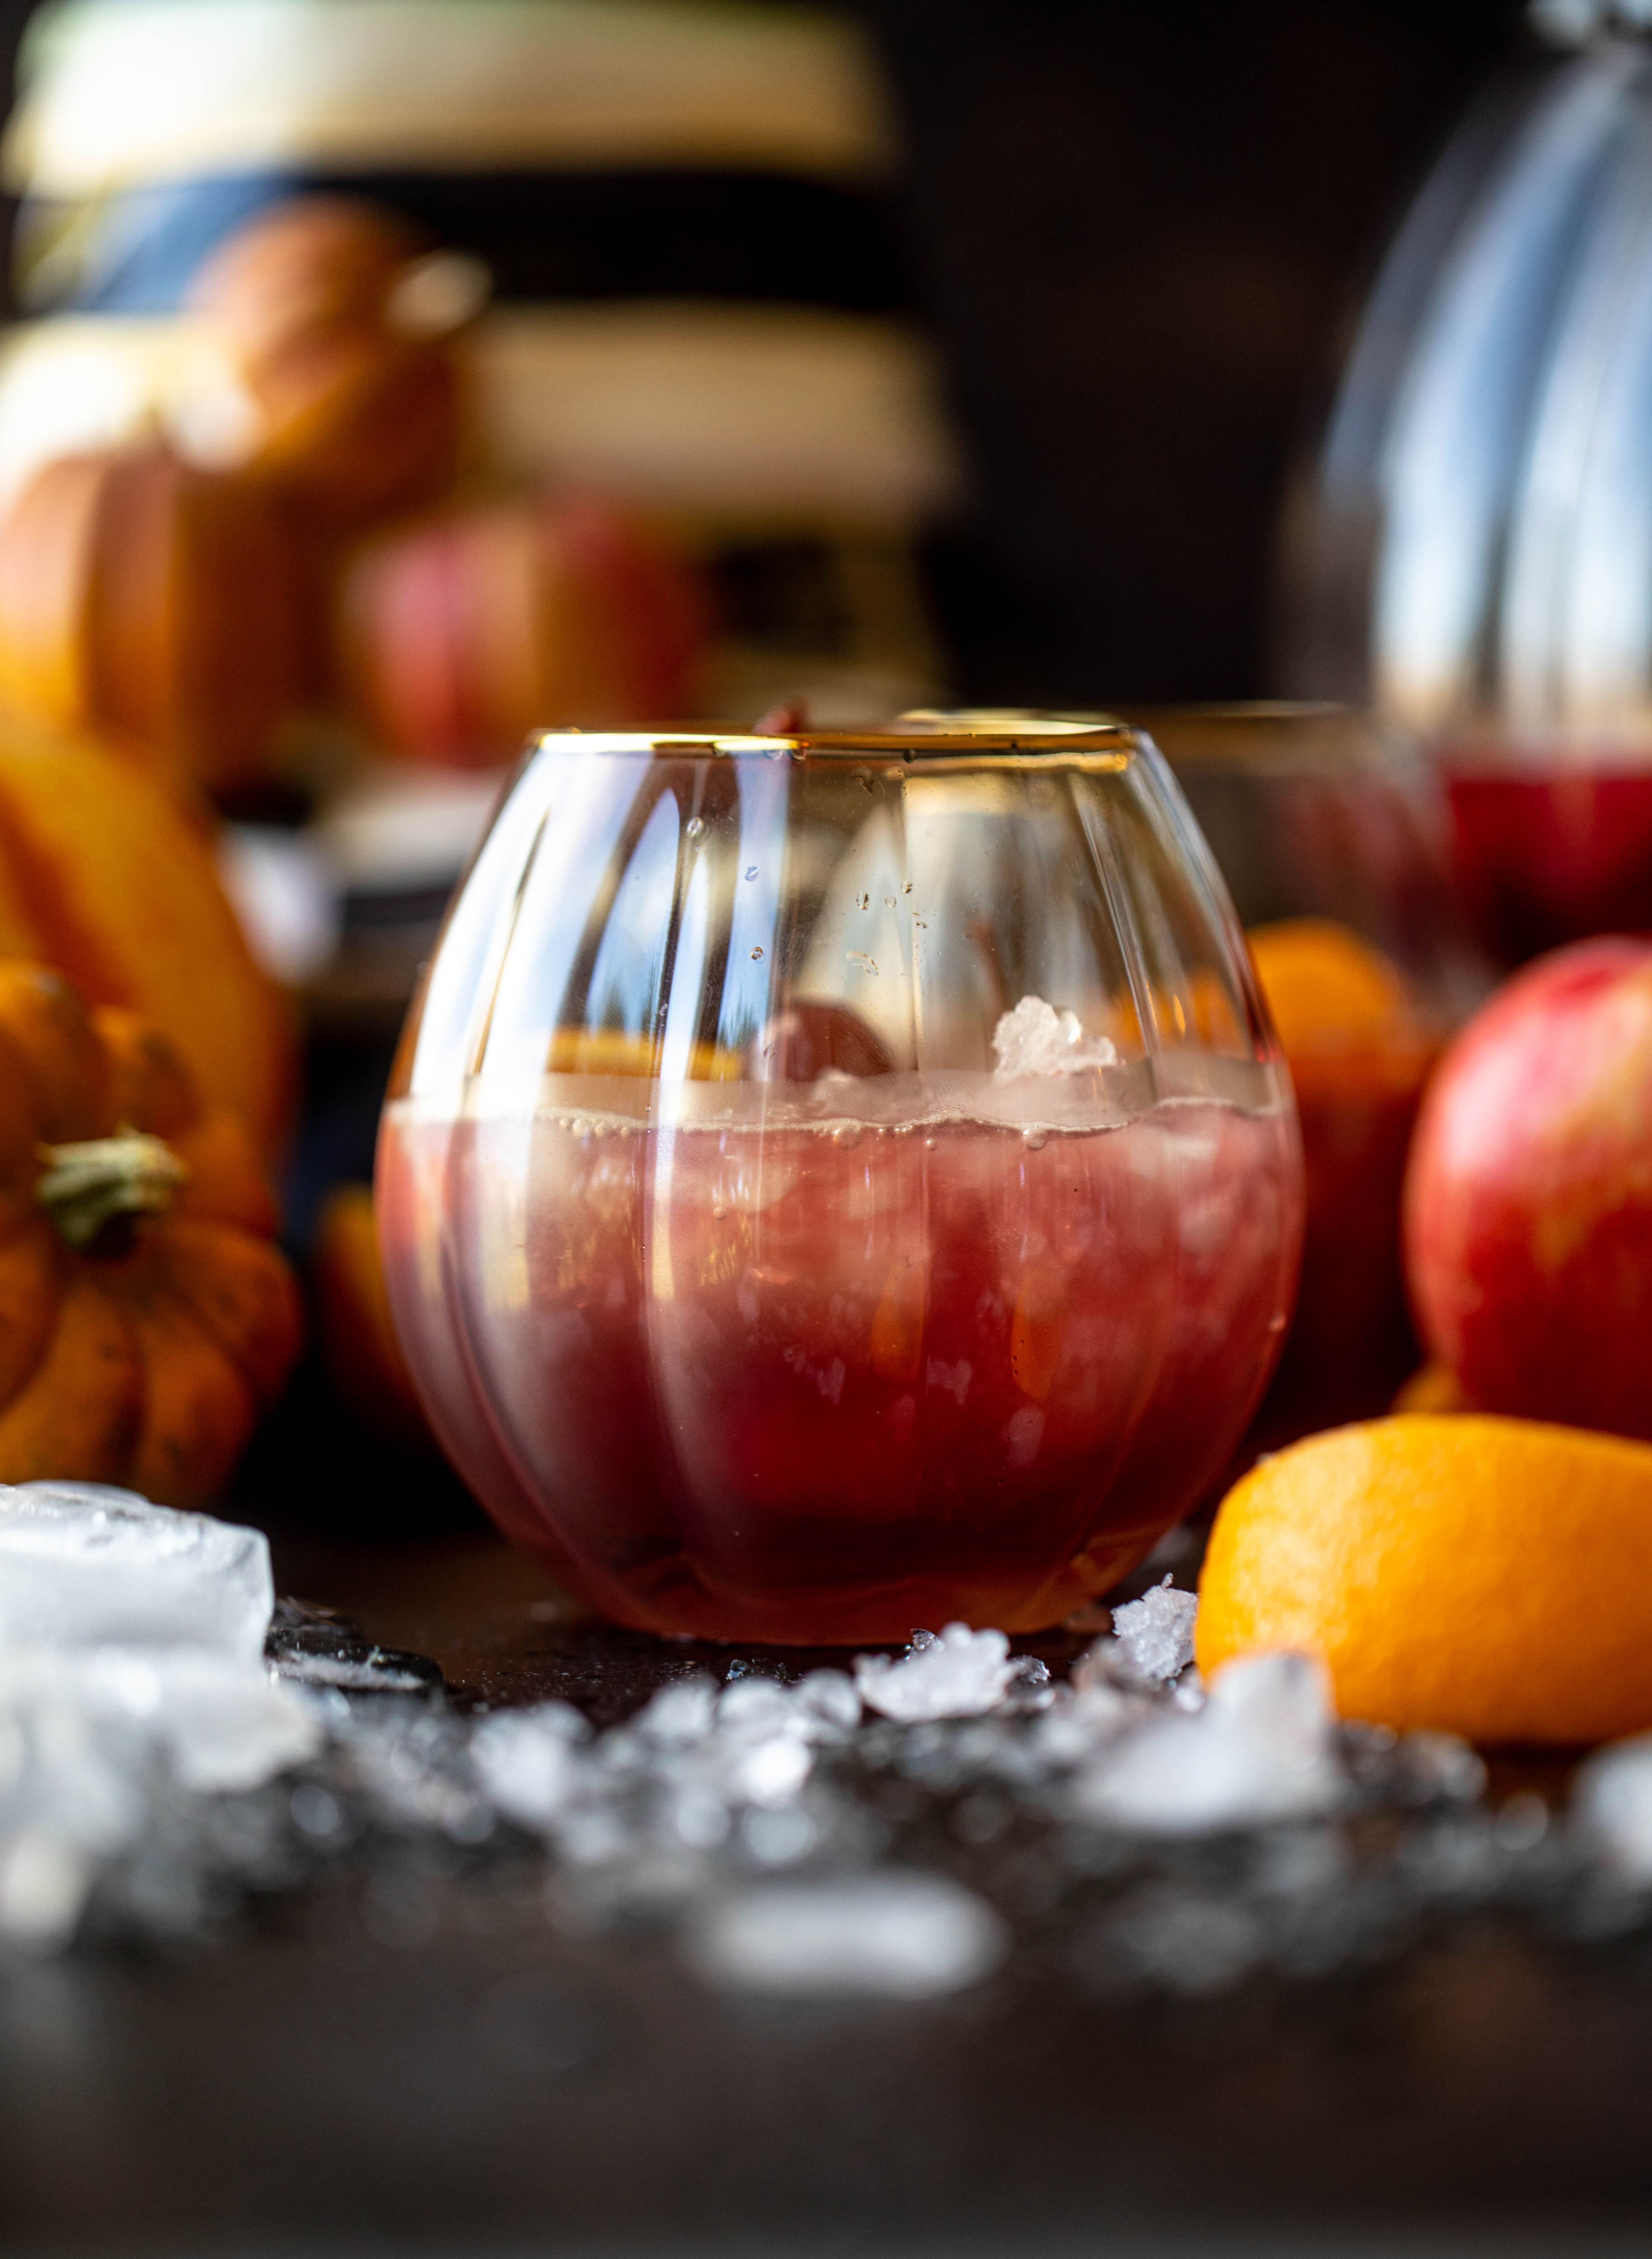 一个有趣的万圣节punch，每个人都可以享受!Hocus pocus潘趣酒充满了苹果酒、橘子和蔓越莓，味道非常美味!